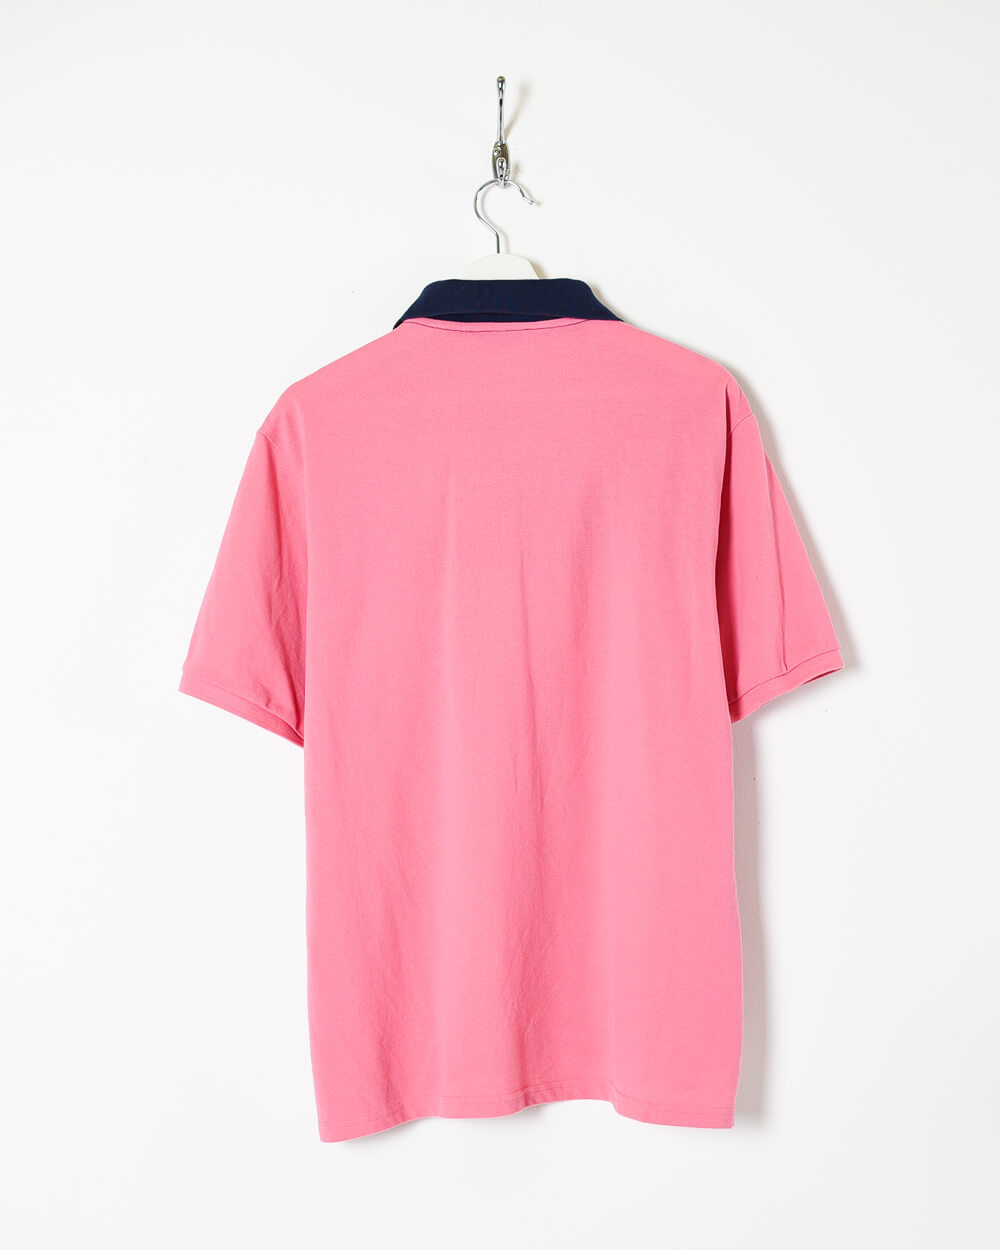 Pink Yves Saint Laurent Pour Bomme Polo Shirt - Medium